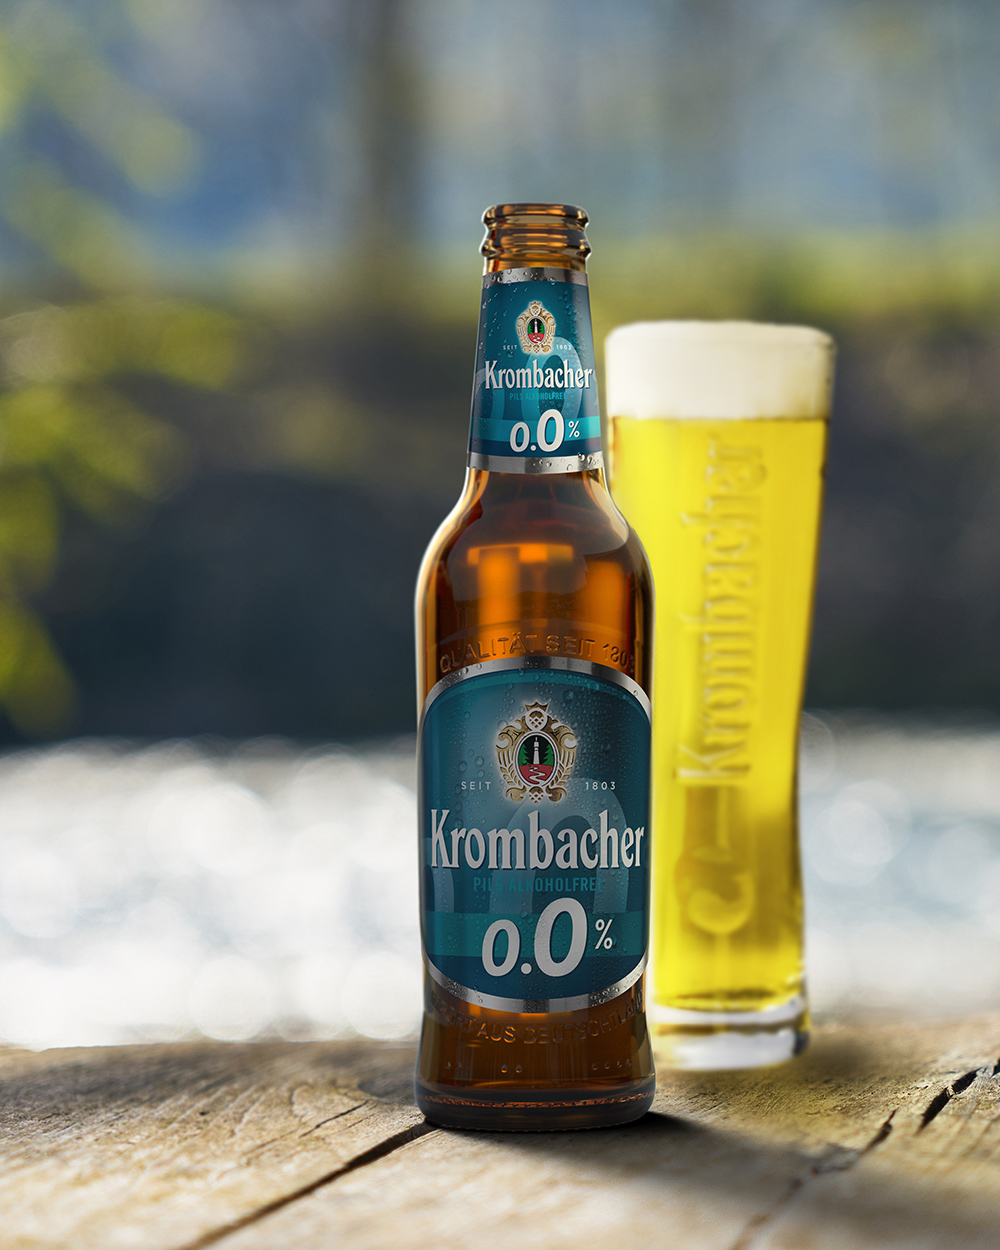 【德國Krombacher科倫堡】0.0%零酒精啤酒飲料